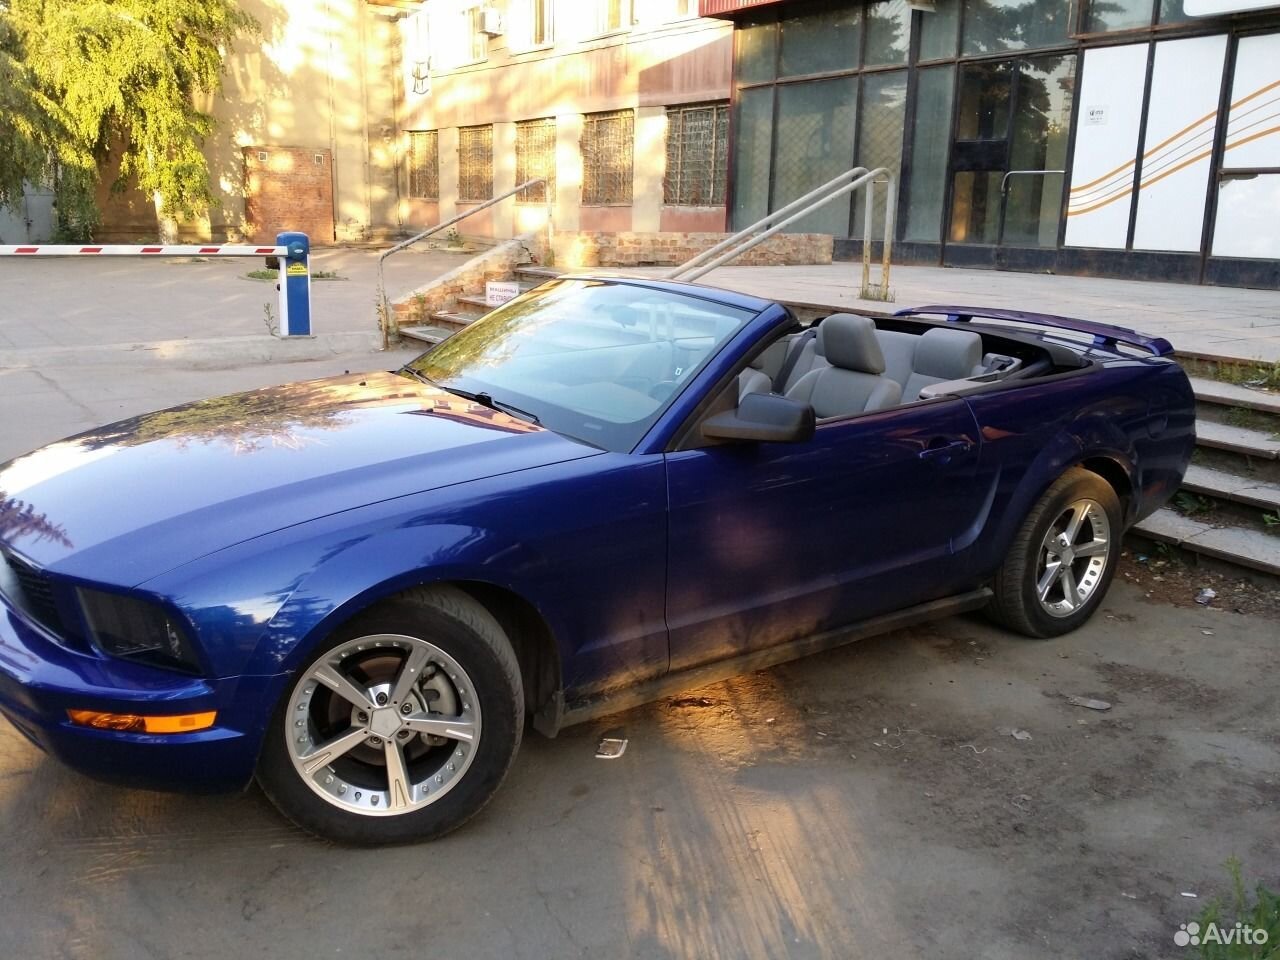 Купить форд в саратове. Ford Mustang 4.0 at голубой. Форд Мустанг Саратов. Форд Мустанг кабриолет 2005 года. Дорогие машины в Саратове.